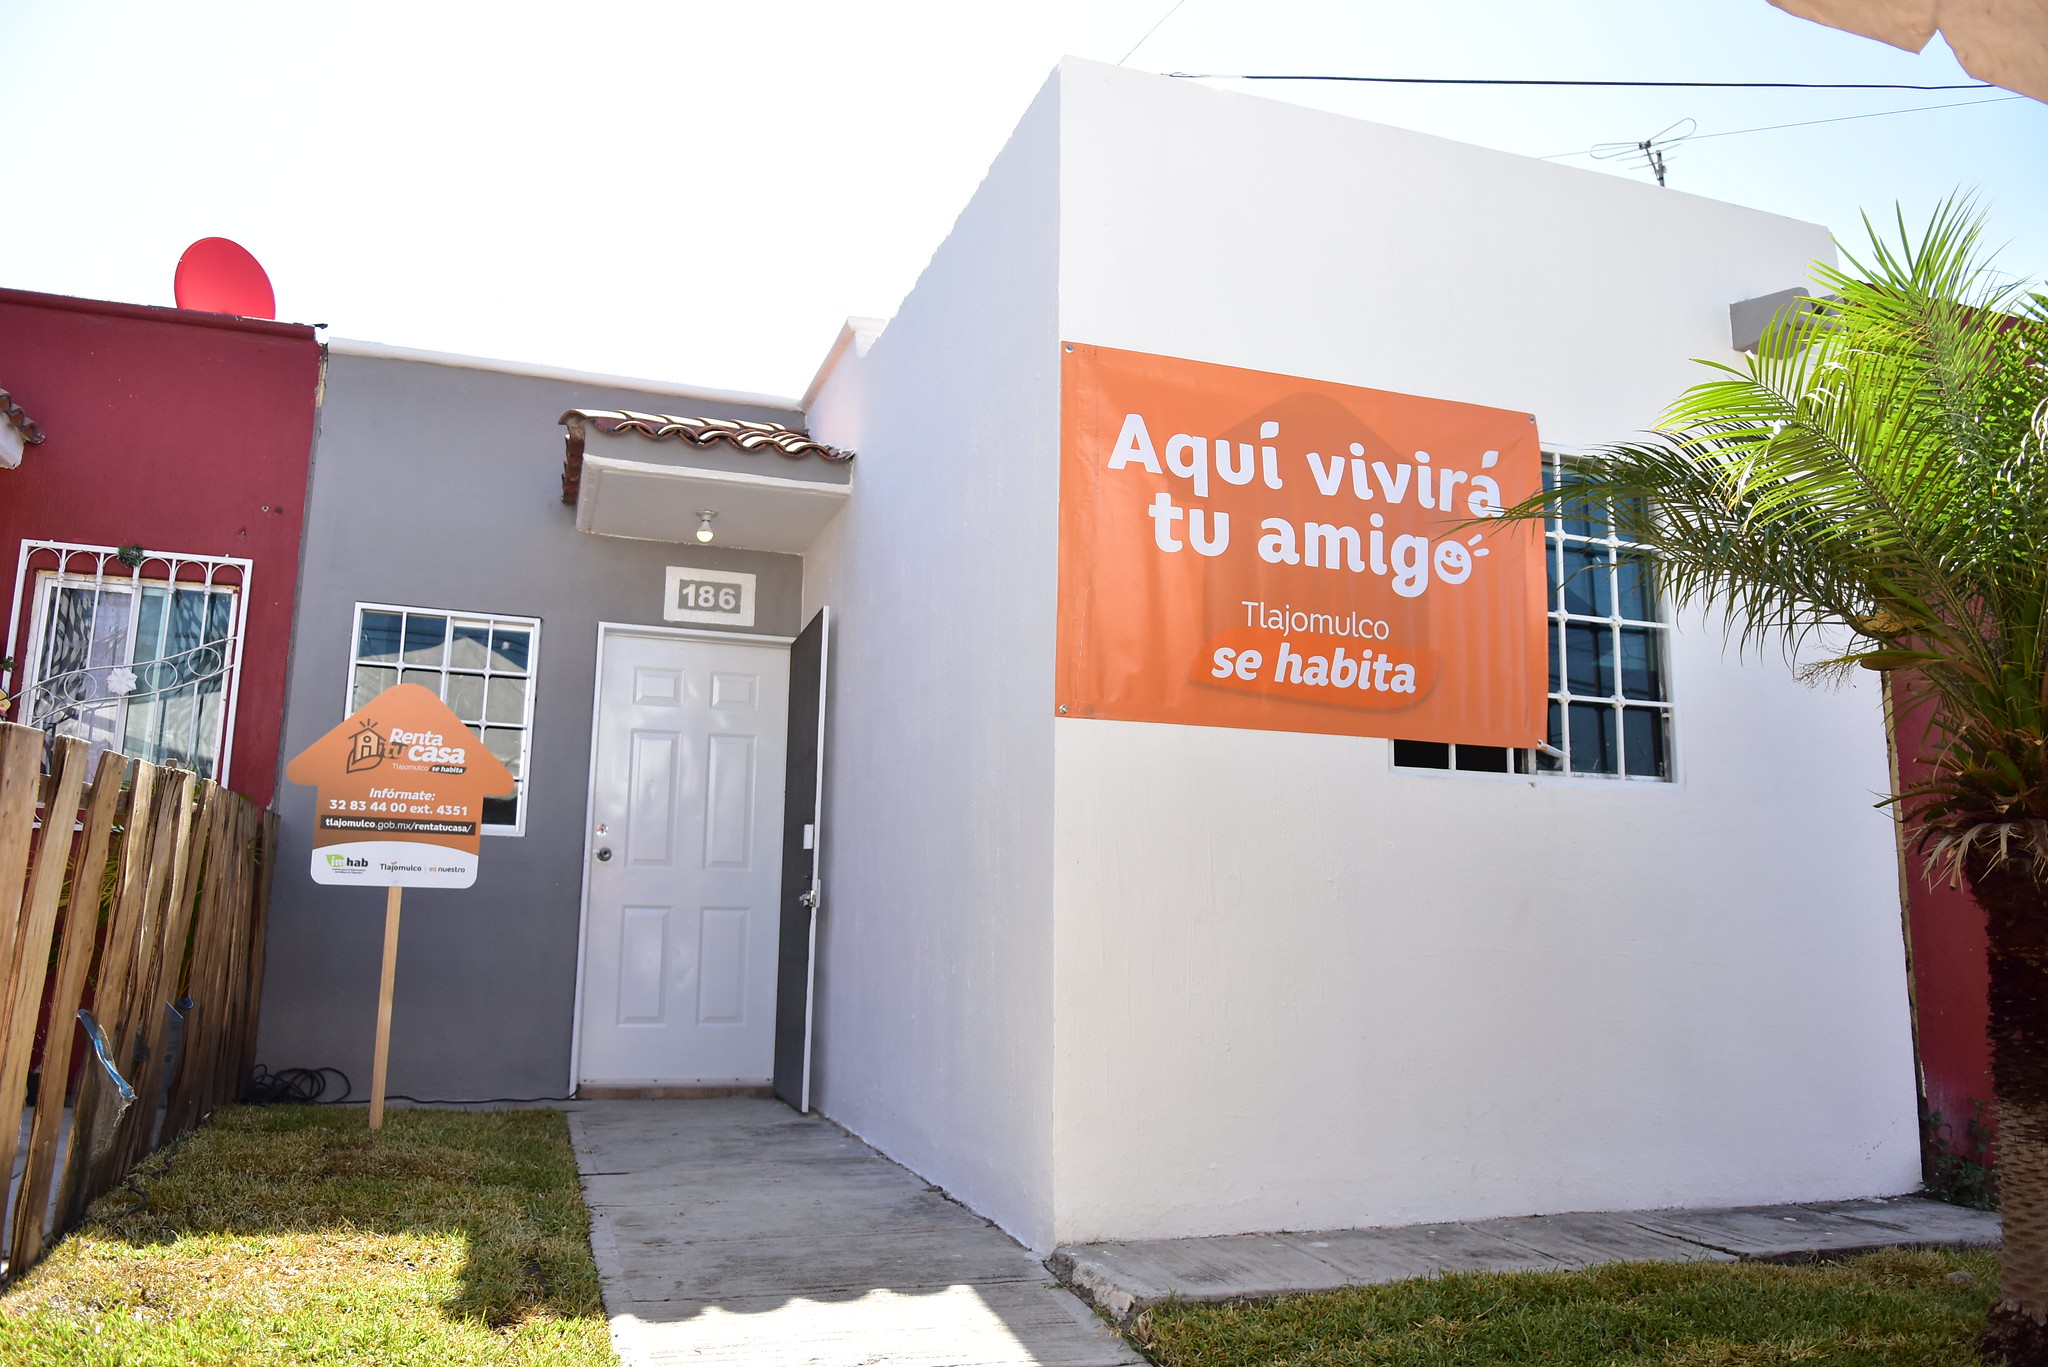 Tlajomulco ofrece casas en renta por 350 pesos